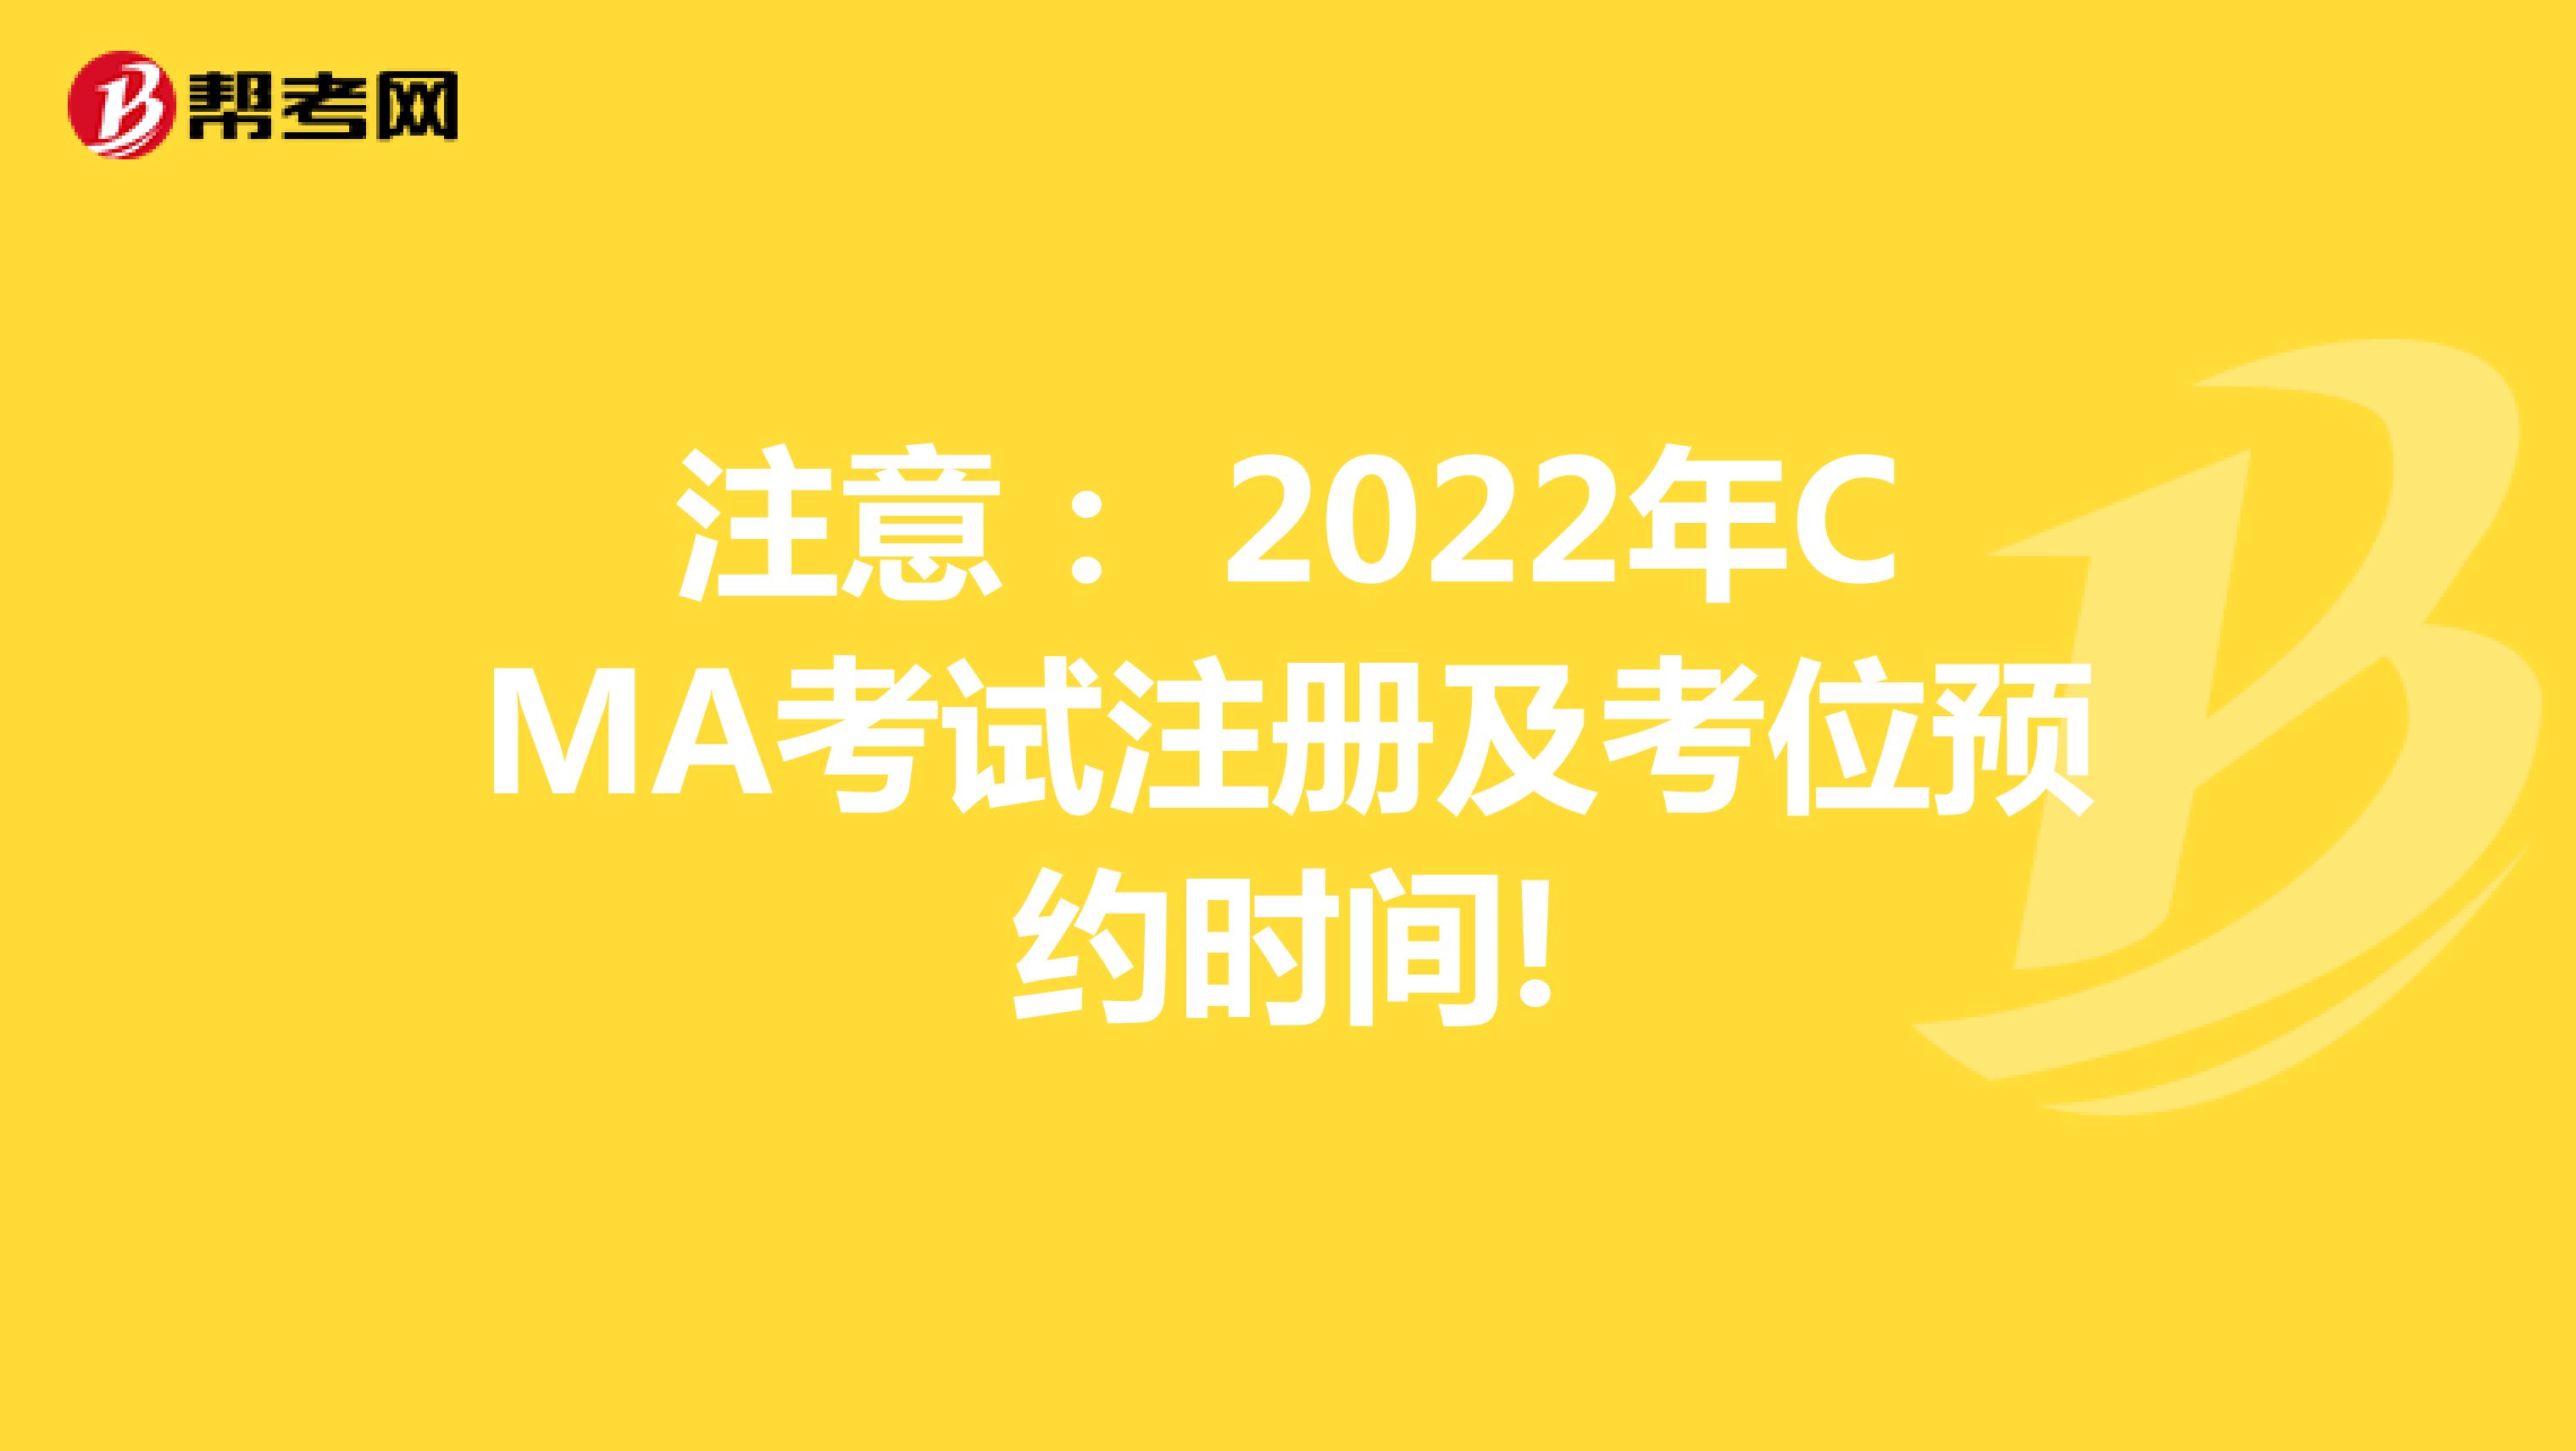 注意： 2022年CMA考试注册及考位预约时间!